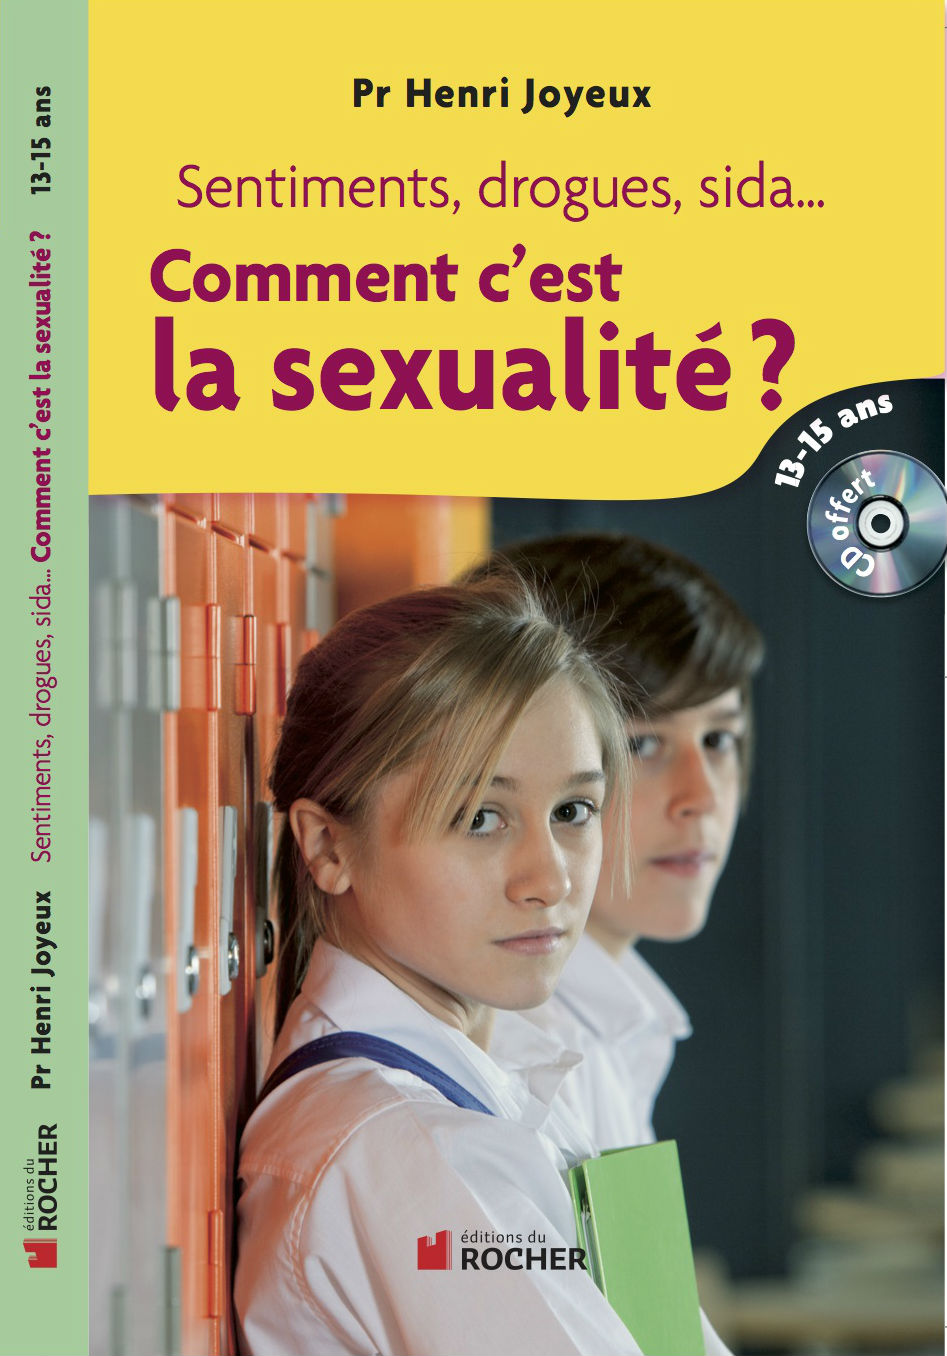 Sexualité Archives Page 4 Sur 5 Site Officiel Du Pr Henri Joyeux